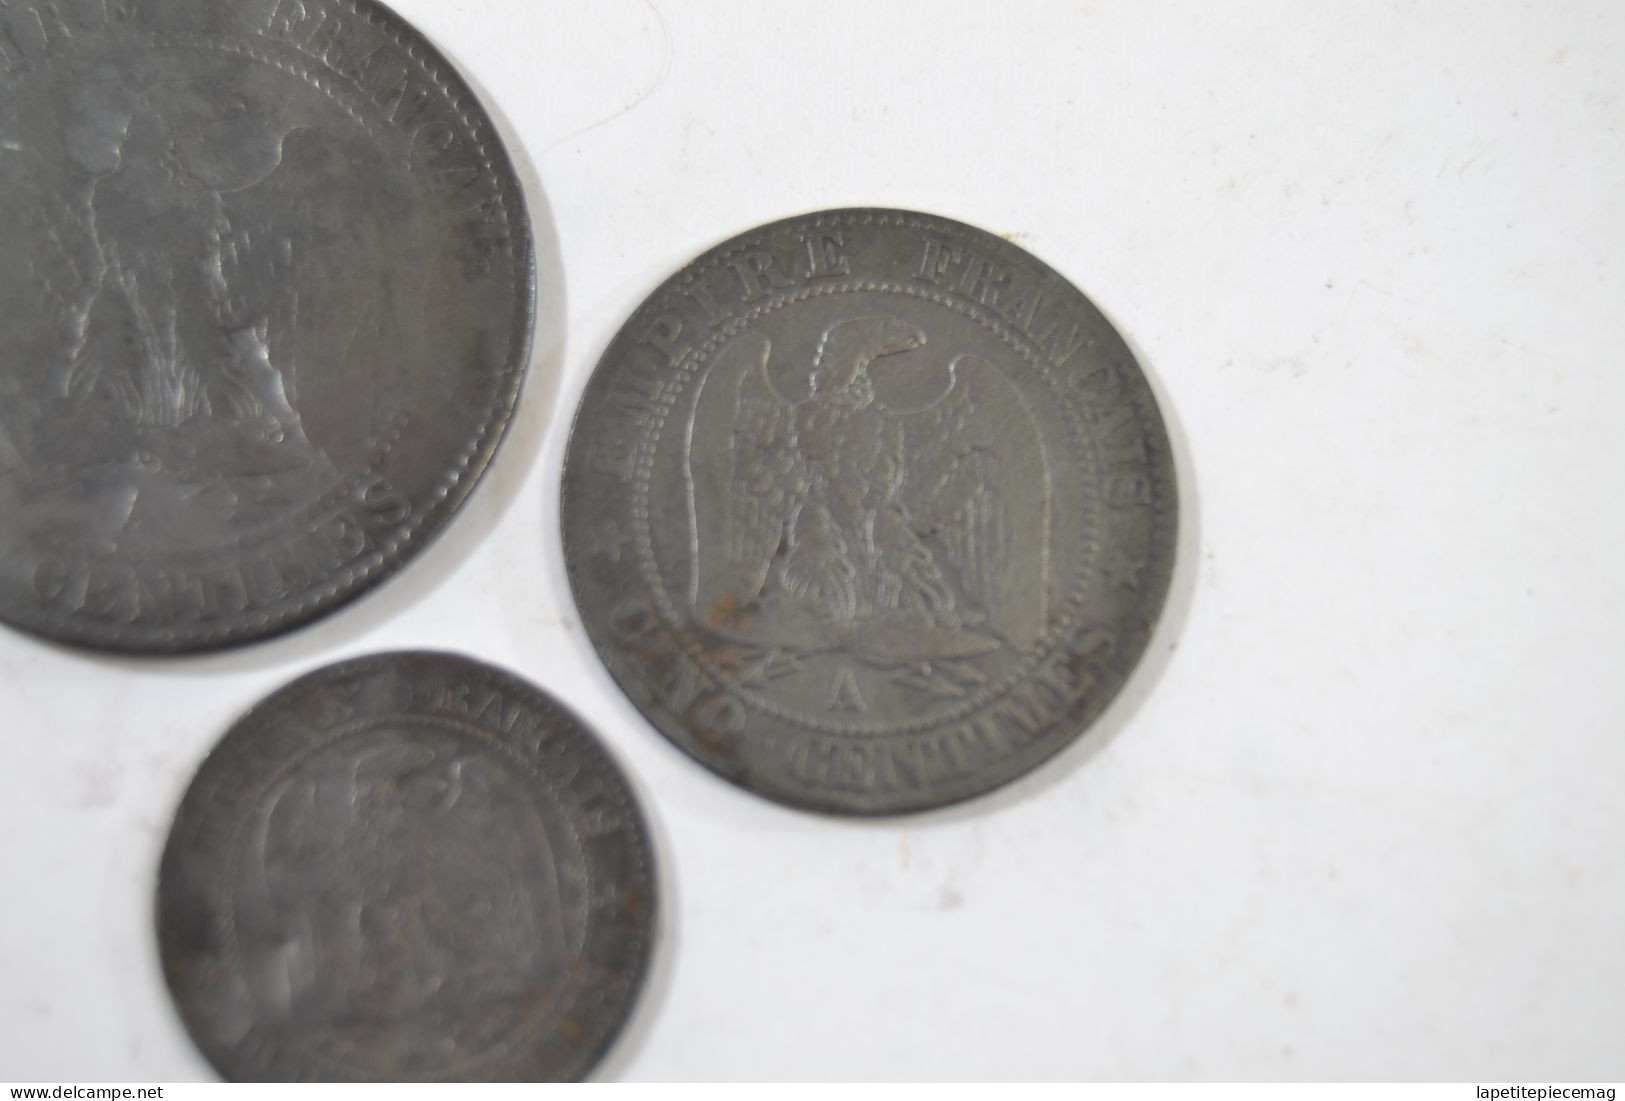 Lot monnaies Napoléon III 3, 2 centimes 1854, 5 centimes 1855, 10 centimes 1855.